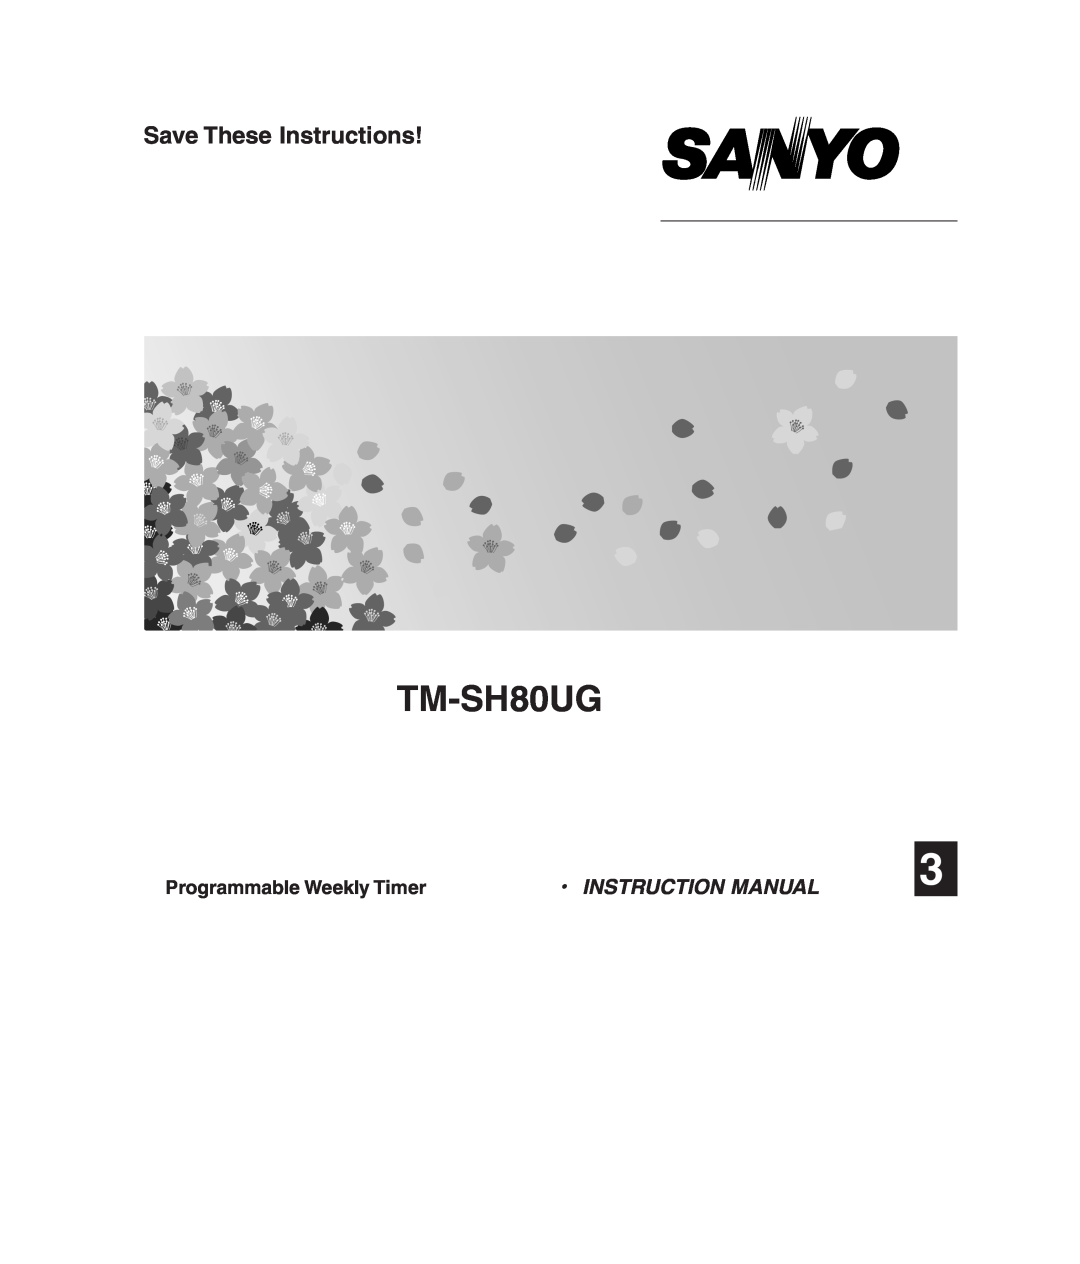 Sanyo RCS-SH80UA, SHA-KC64UG, RCS-SH80UG instruction manual TM-SH80UG, Save These Instructions, Programmable Weekly Timer 